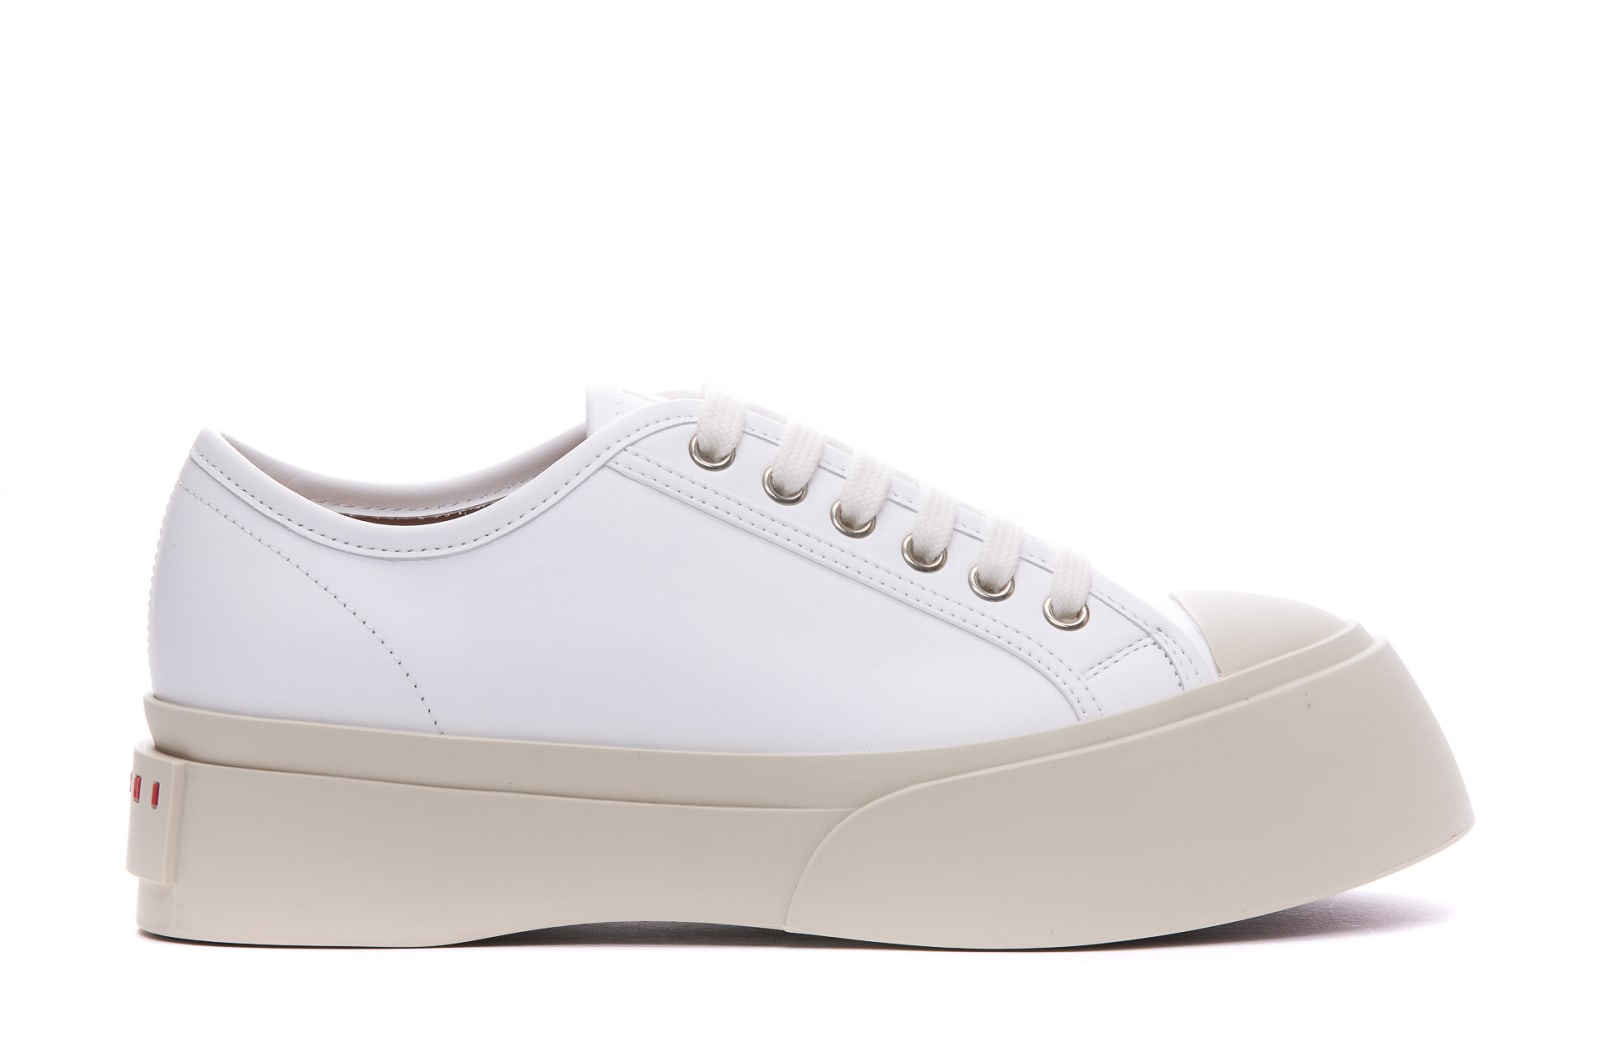 Marni Pablo Sneakers In White